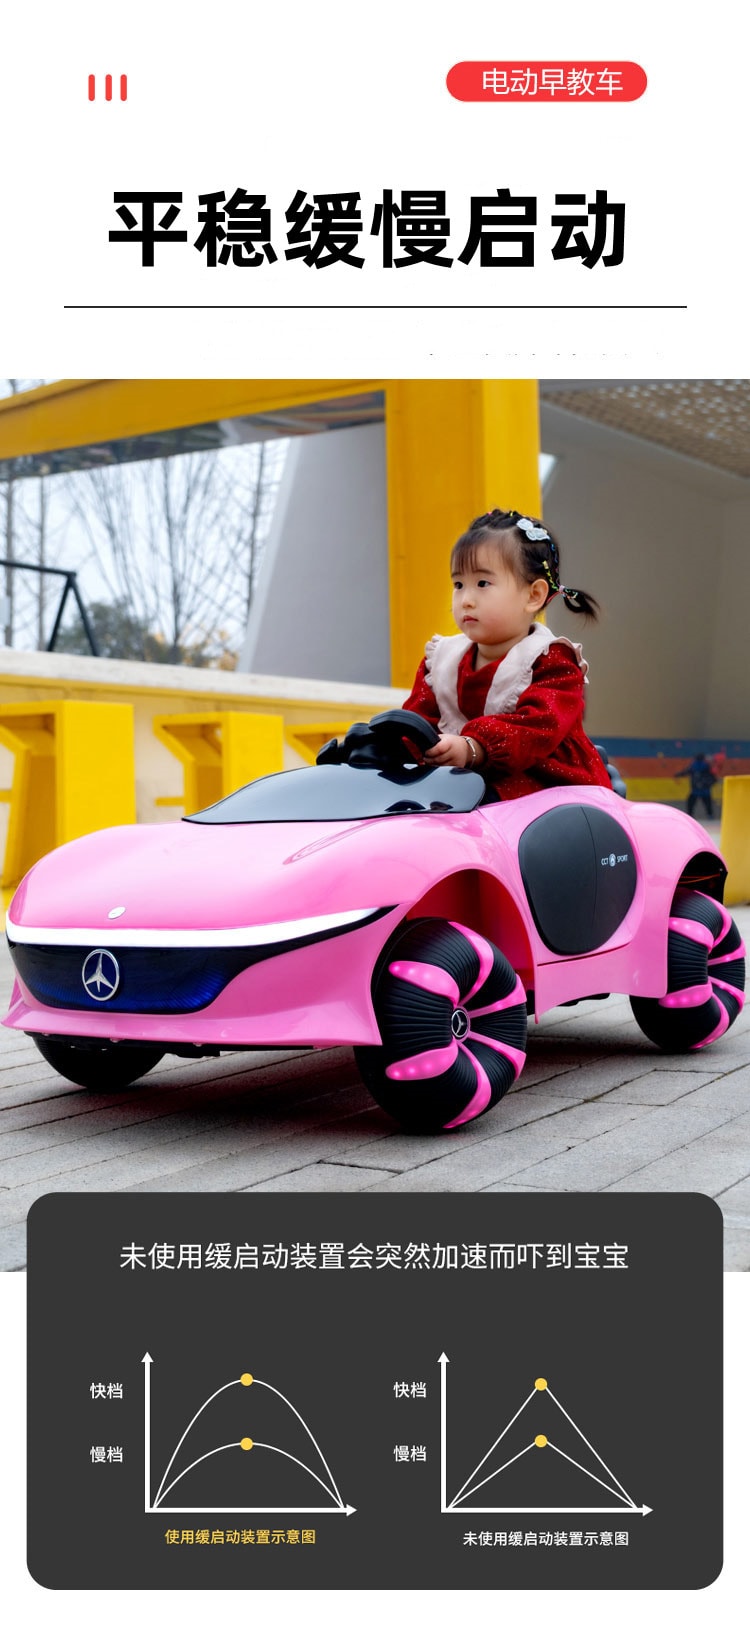 【中国直邮】超炫酷儿童四轮电动车 带遥控电车玩具 早教儿童宝宝车 - 高配 四驱版 白色|*预计到达时间3-4周